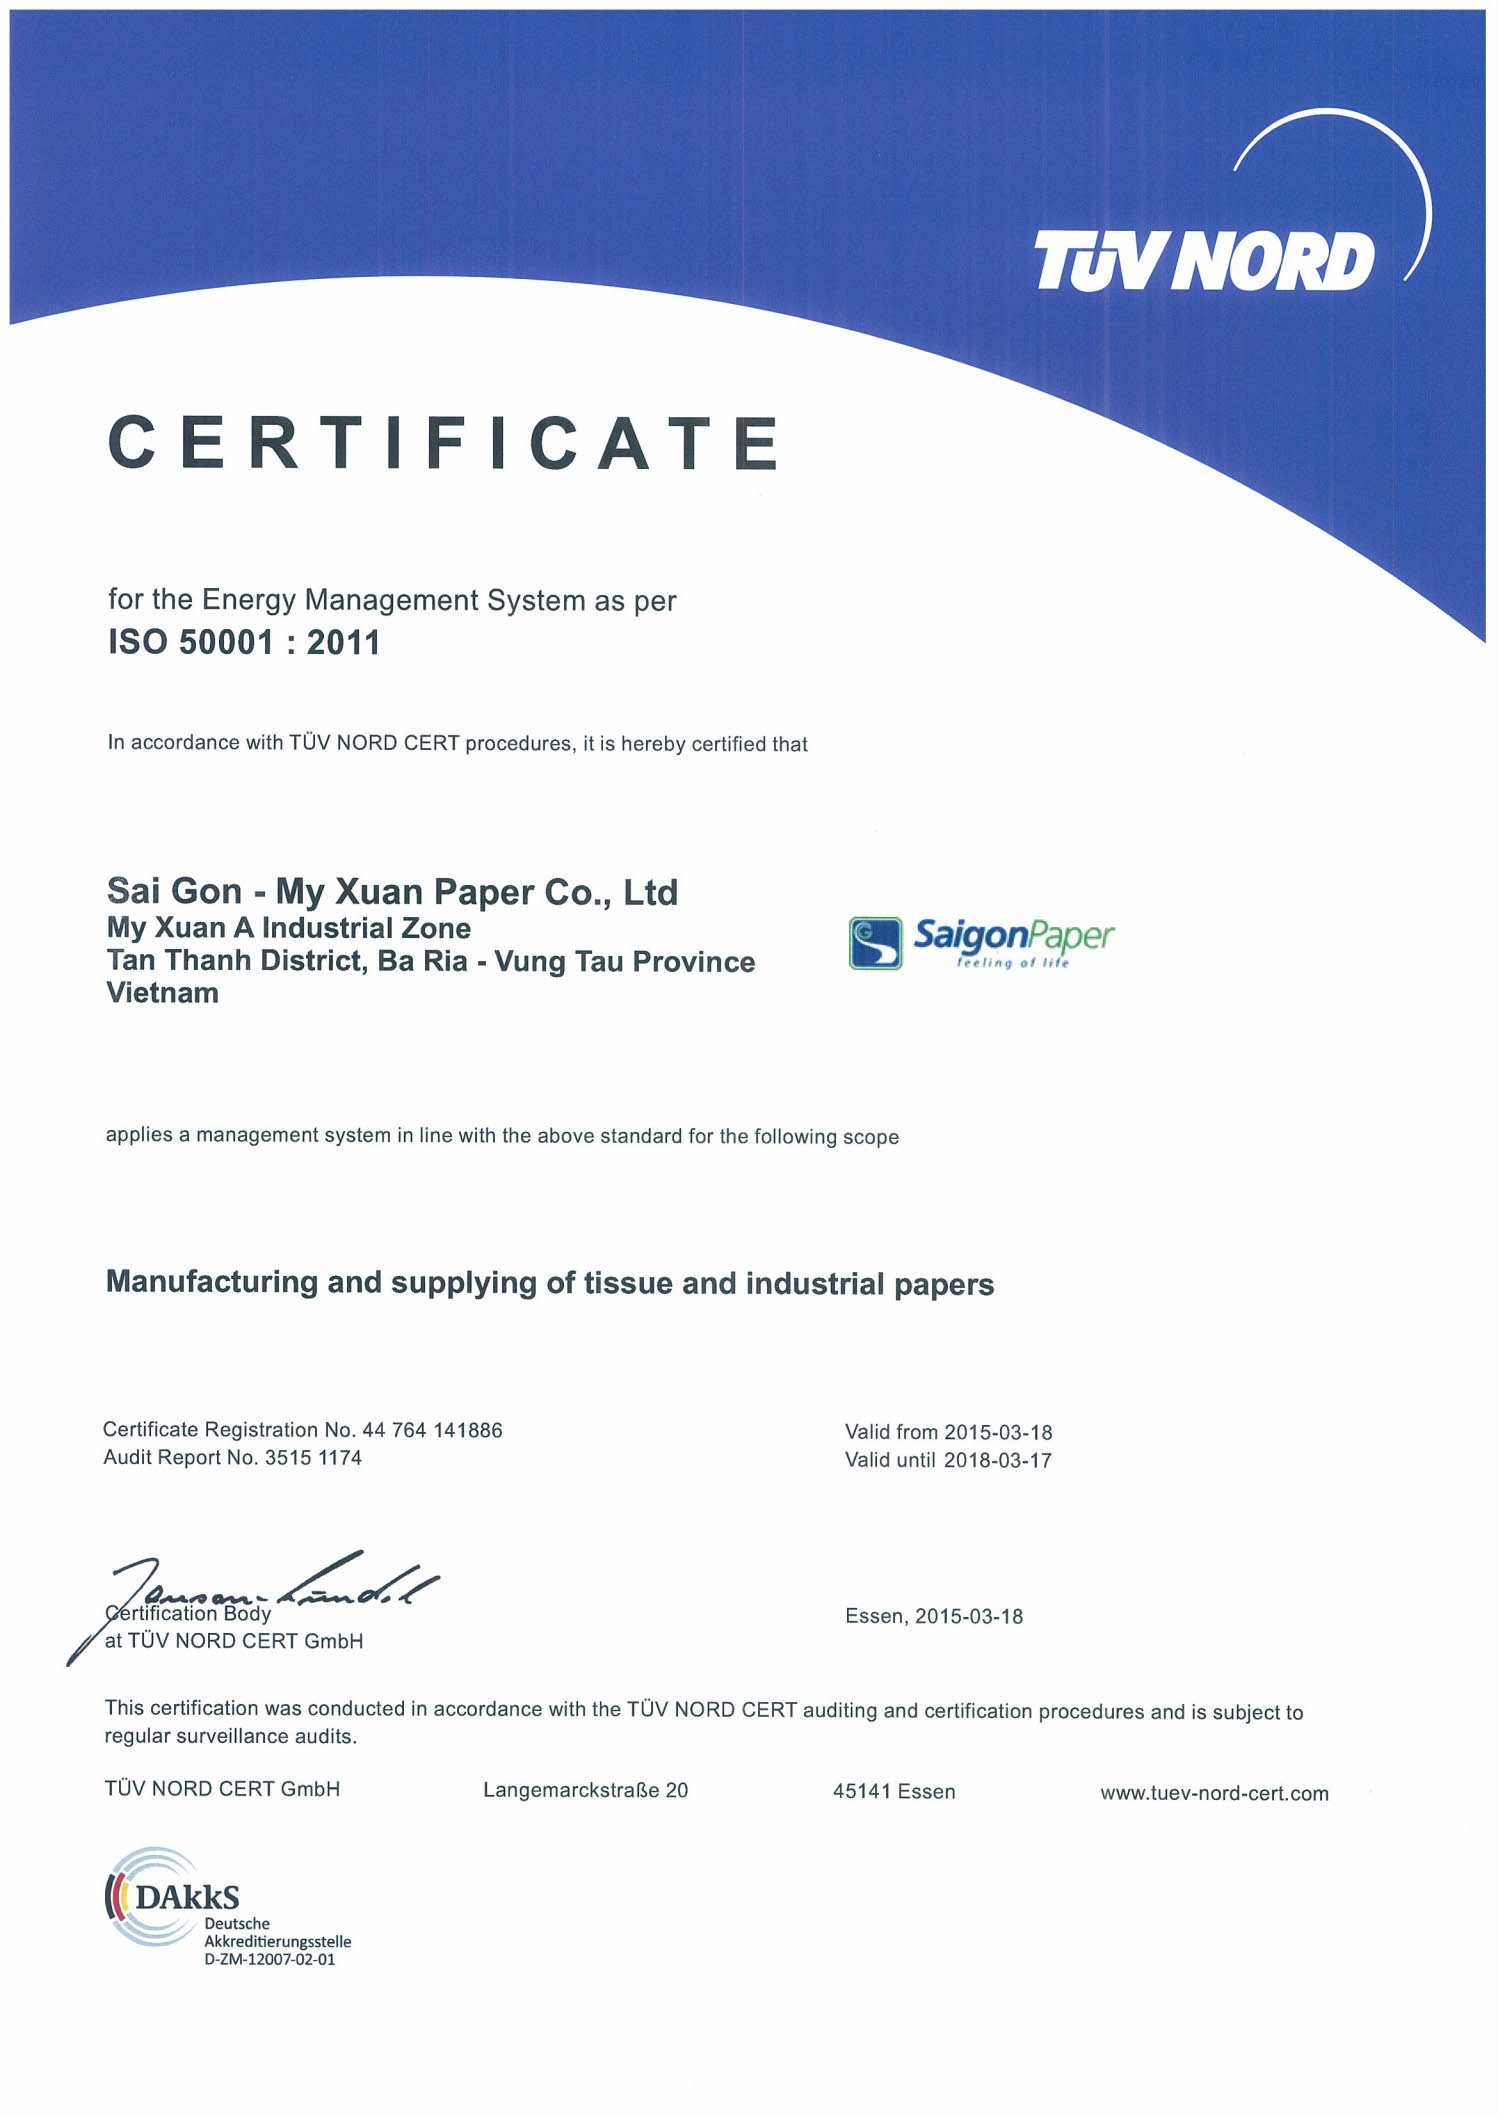 Giấy chứng nhận ISO 50001:2011